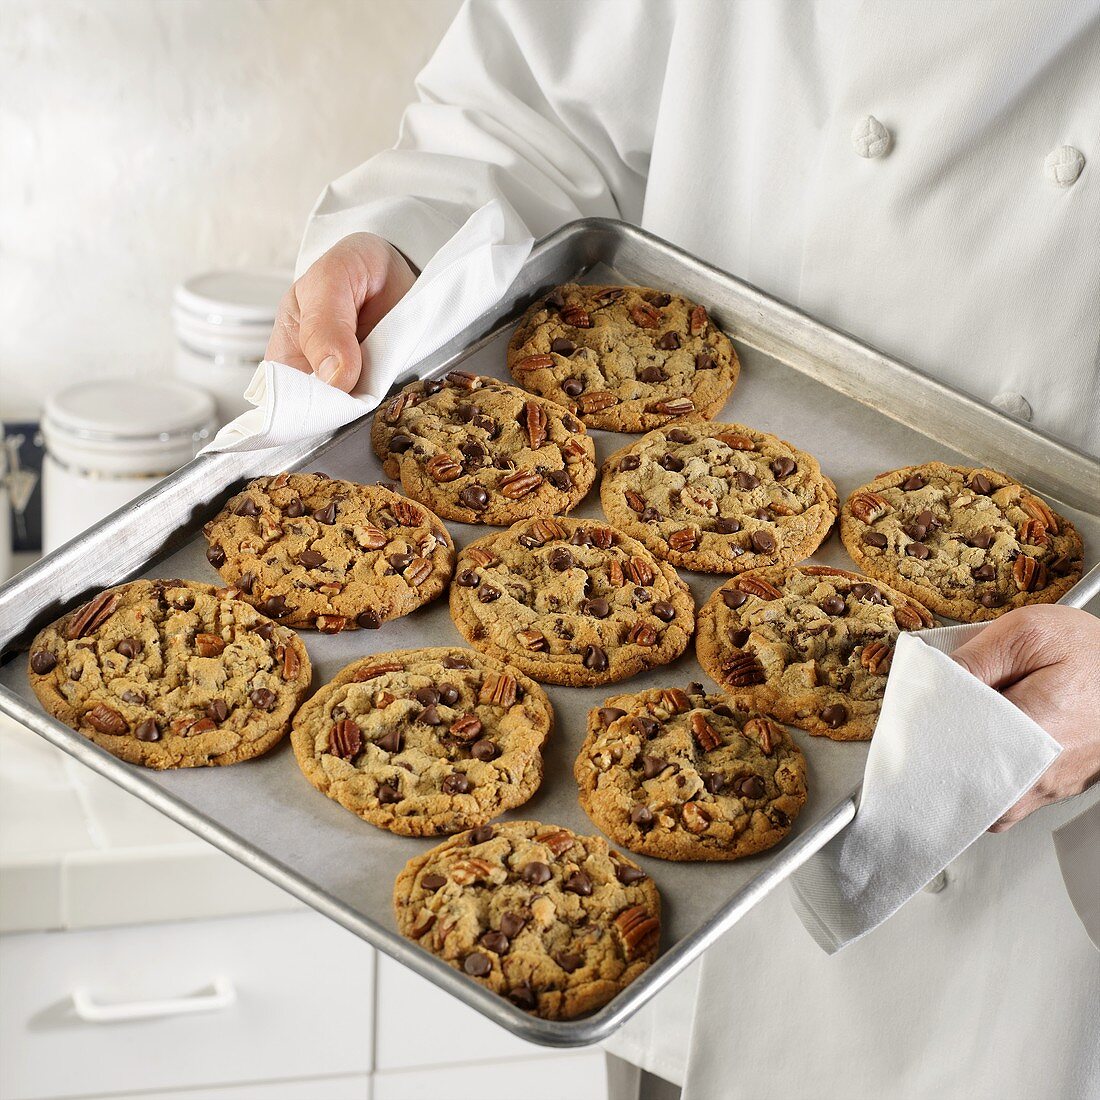 Bäcker hält Backblech mit frisch gebackenen Cookies